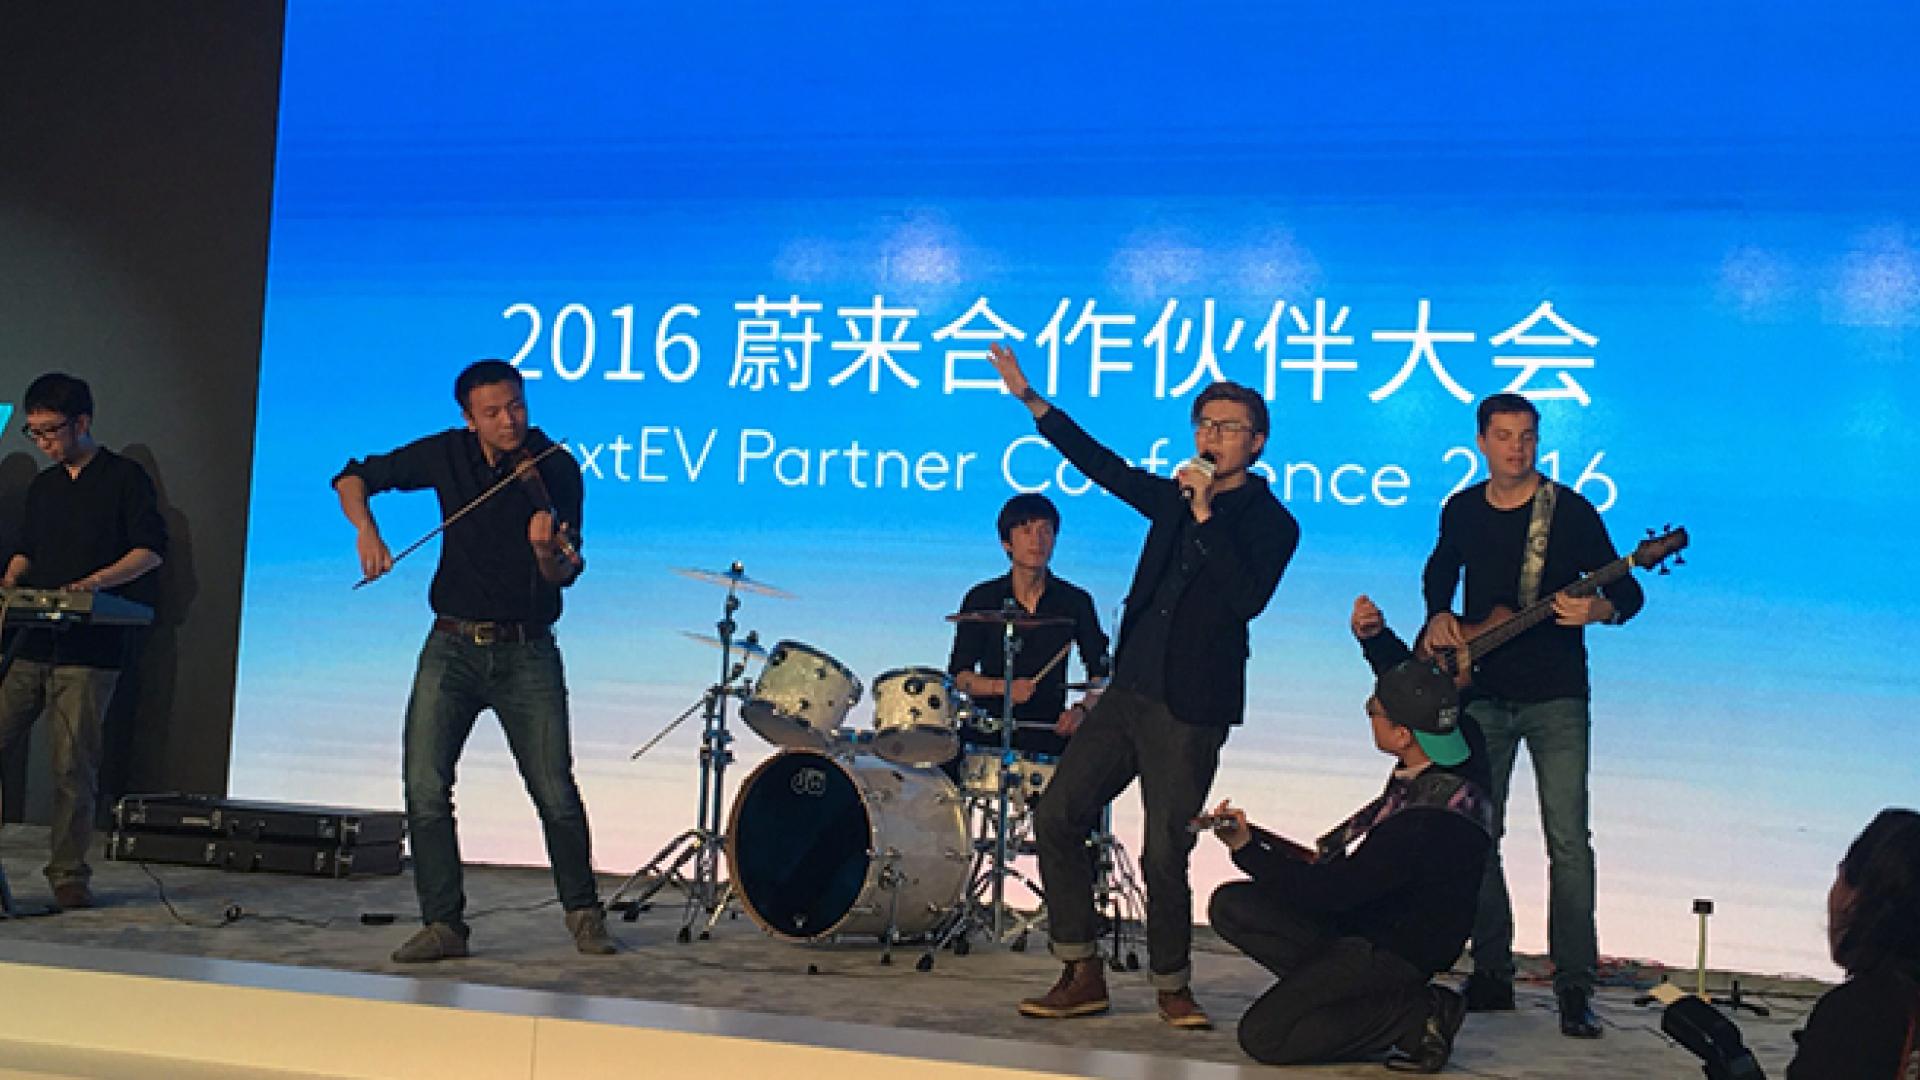 NextEV Partner Conference 2016 Held